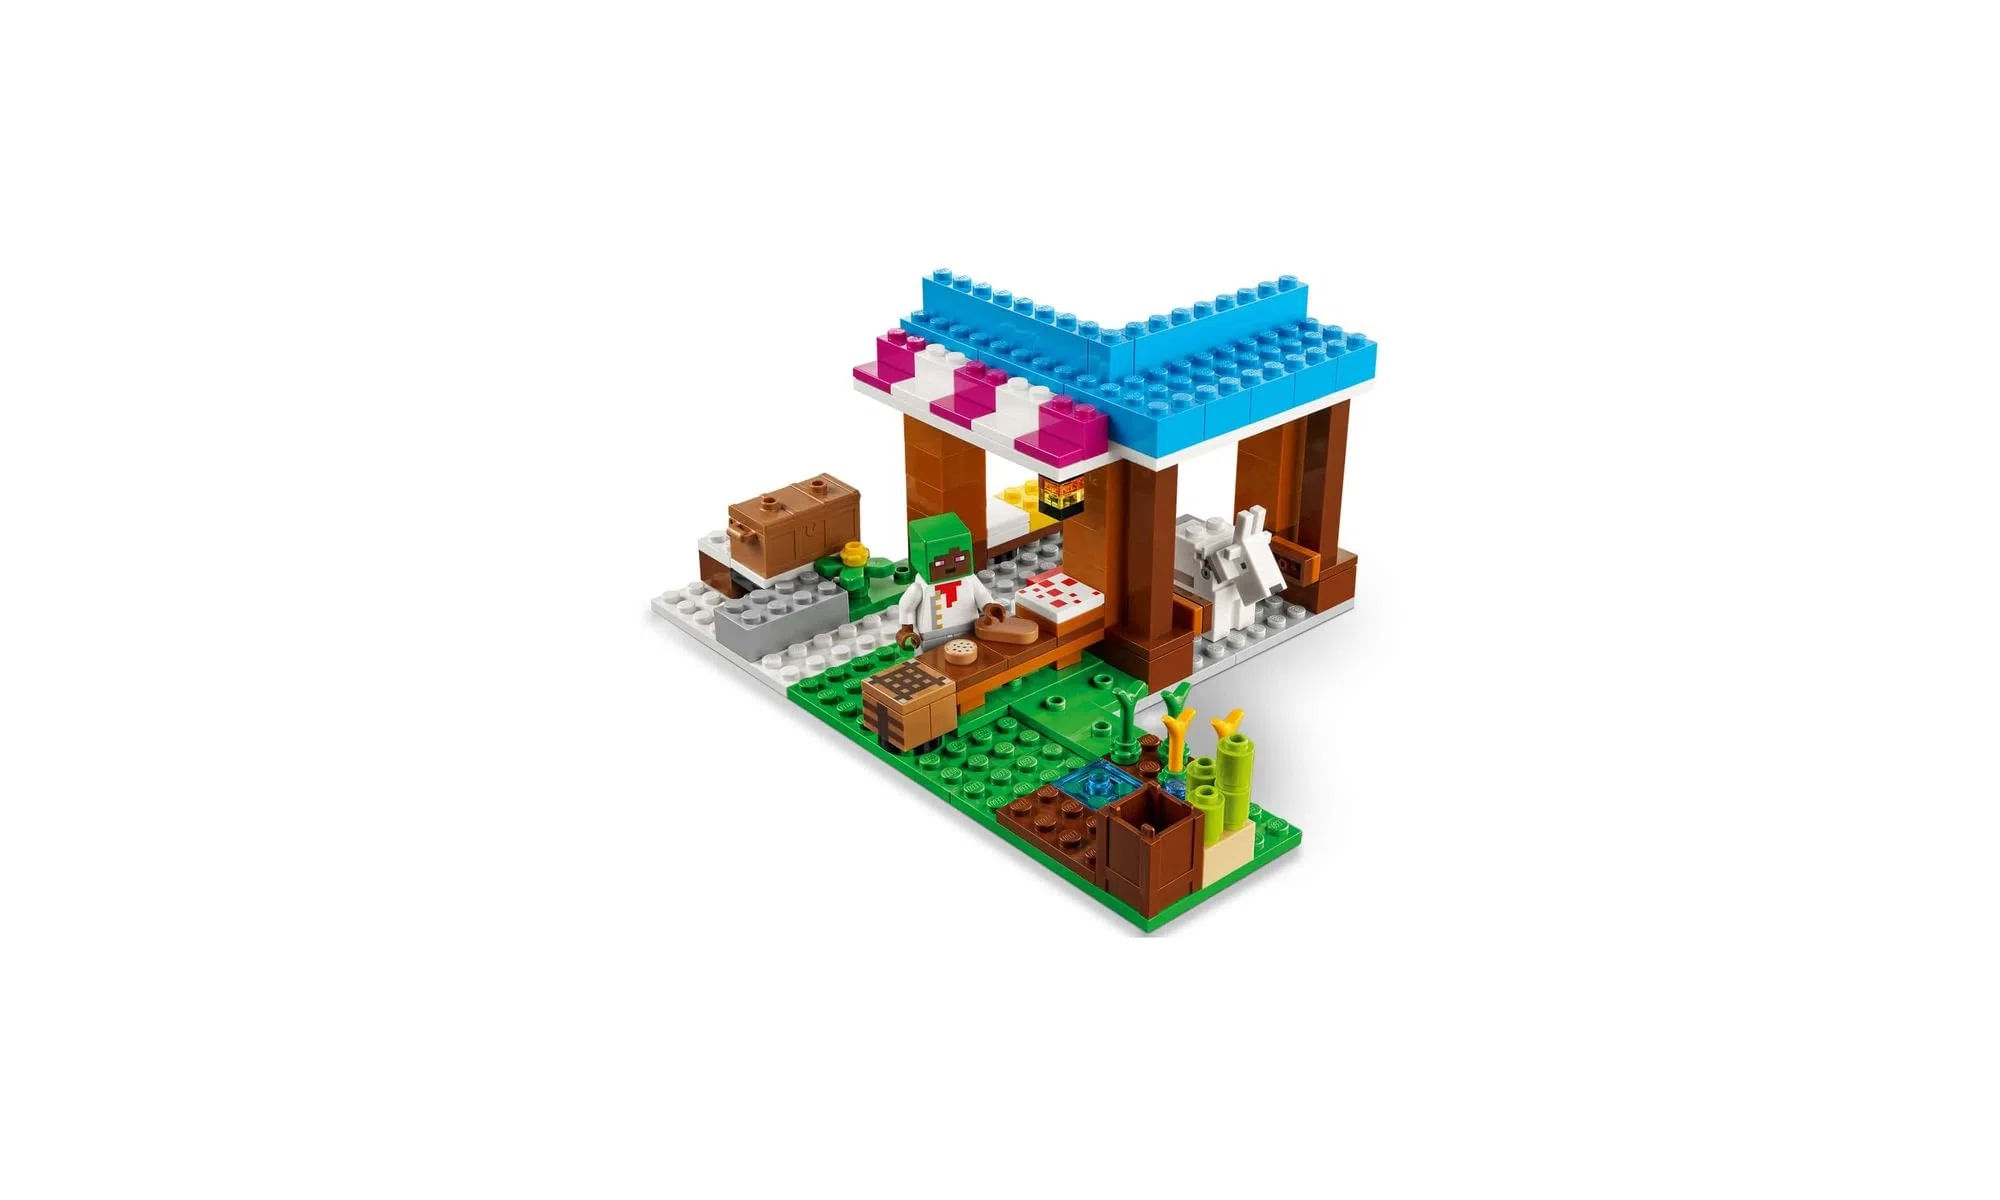 Brinquedo Boneco Minecraft My World Compatível Lego- Creeper